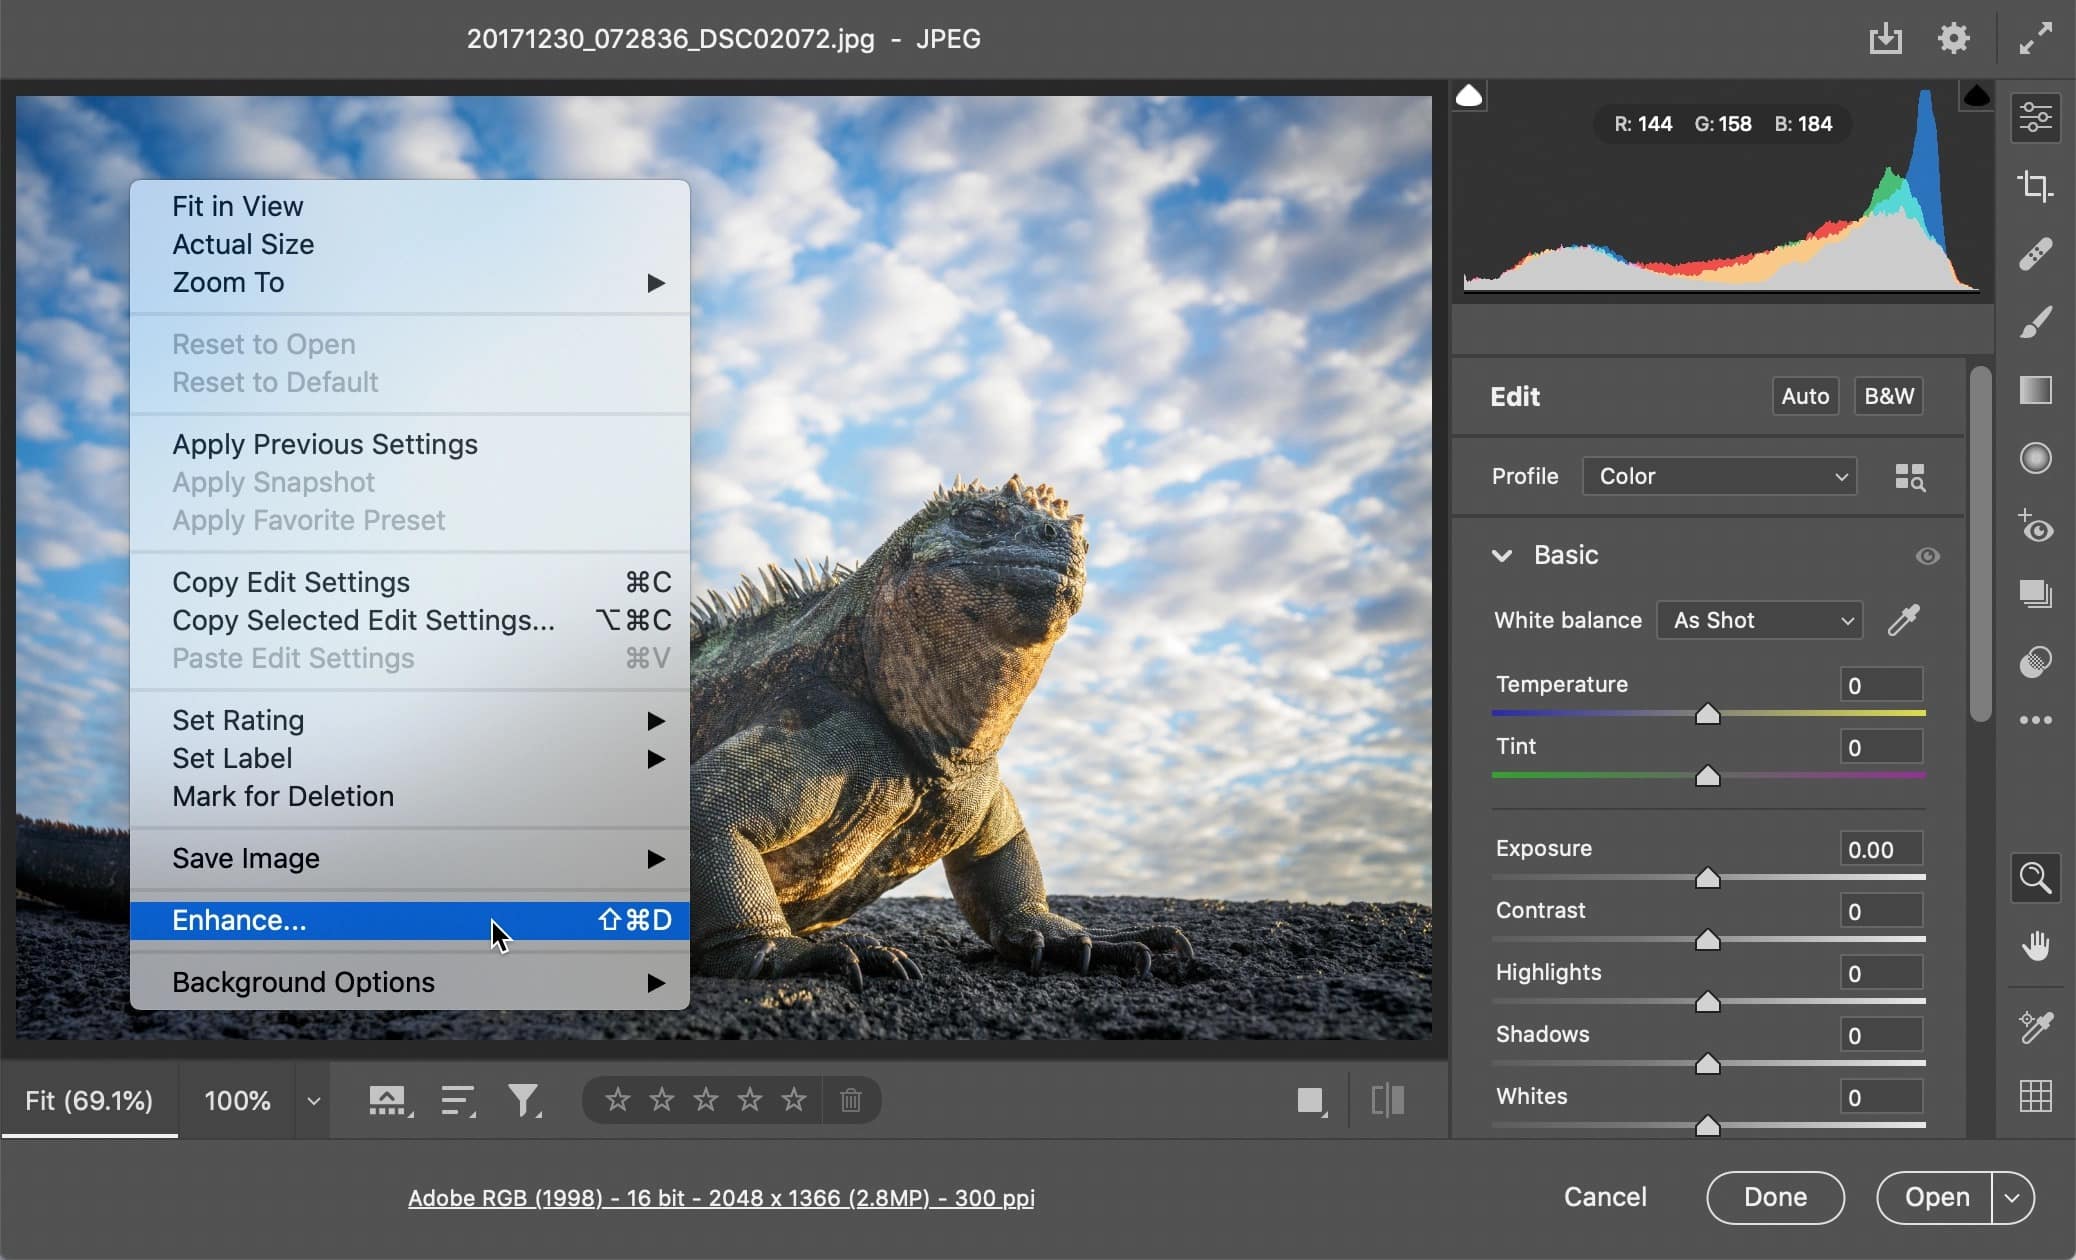 Adobe ra mắt Photoshop chính thức cho M1, thêm tính năng Super Resolution mới